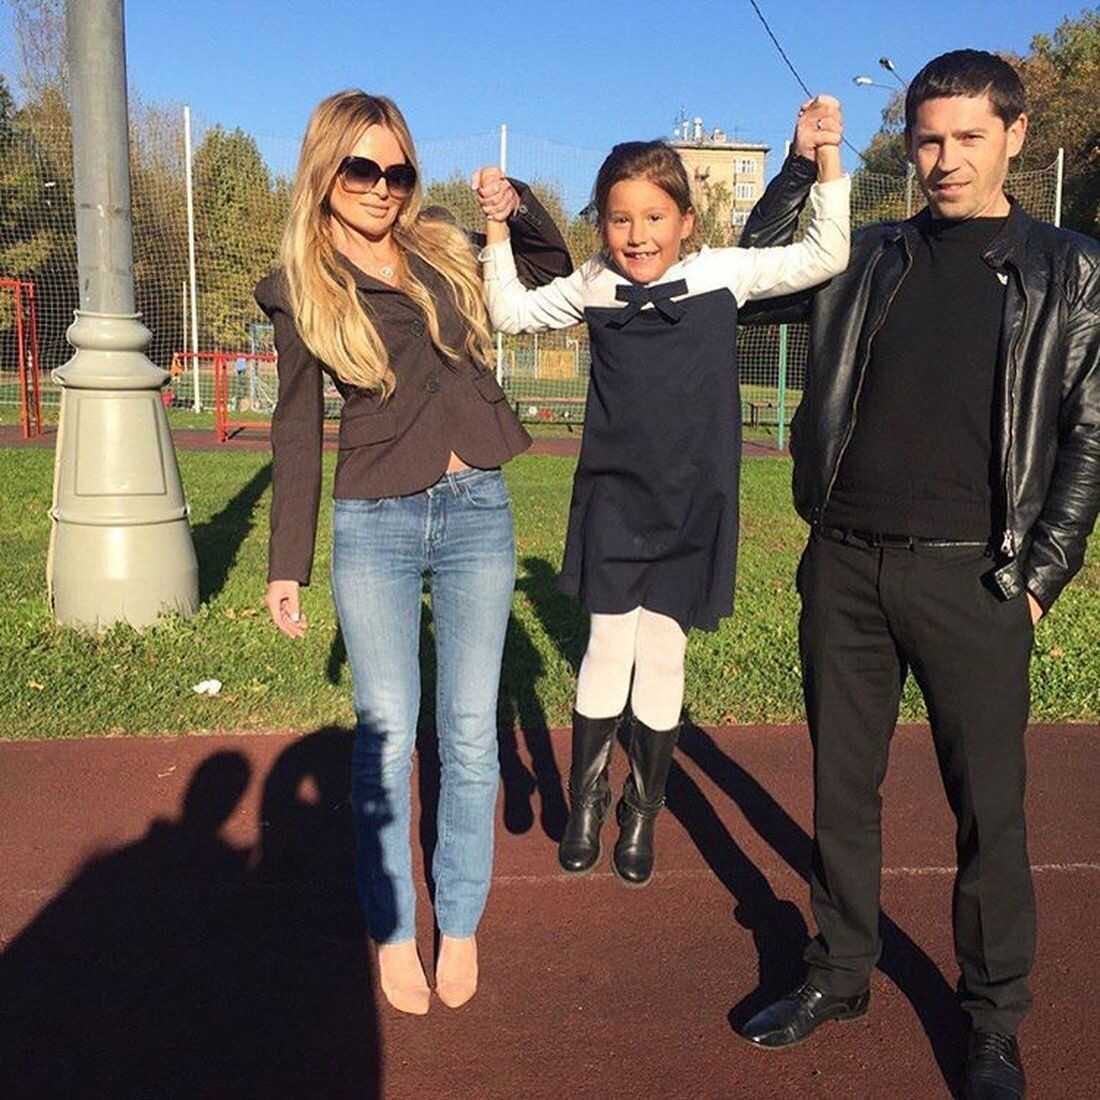 "Держится за юбку мамы": Дана Борисова высказалась об отце своей дочери